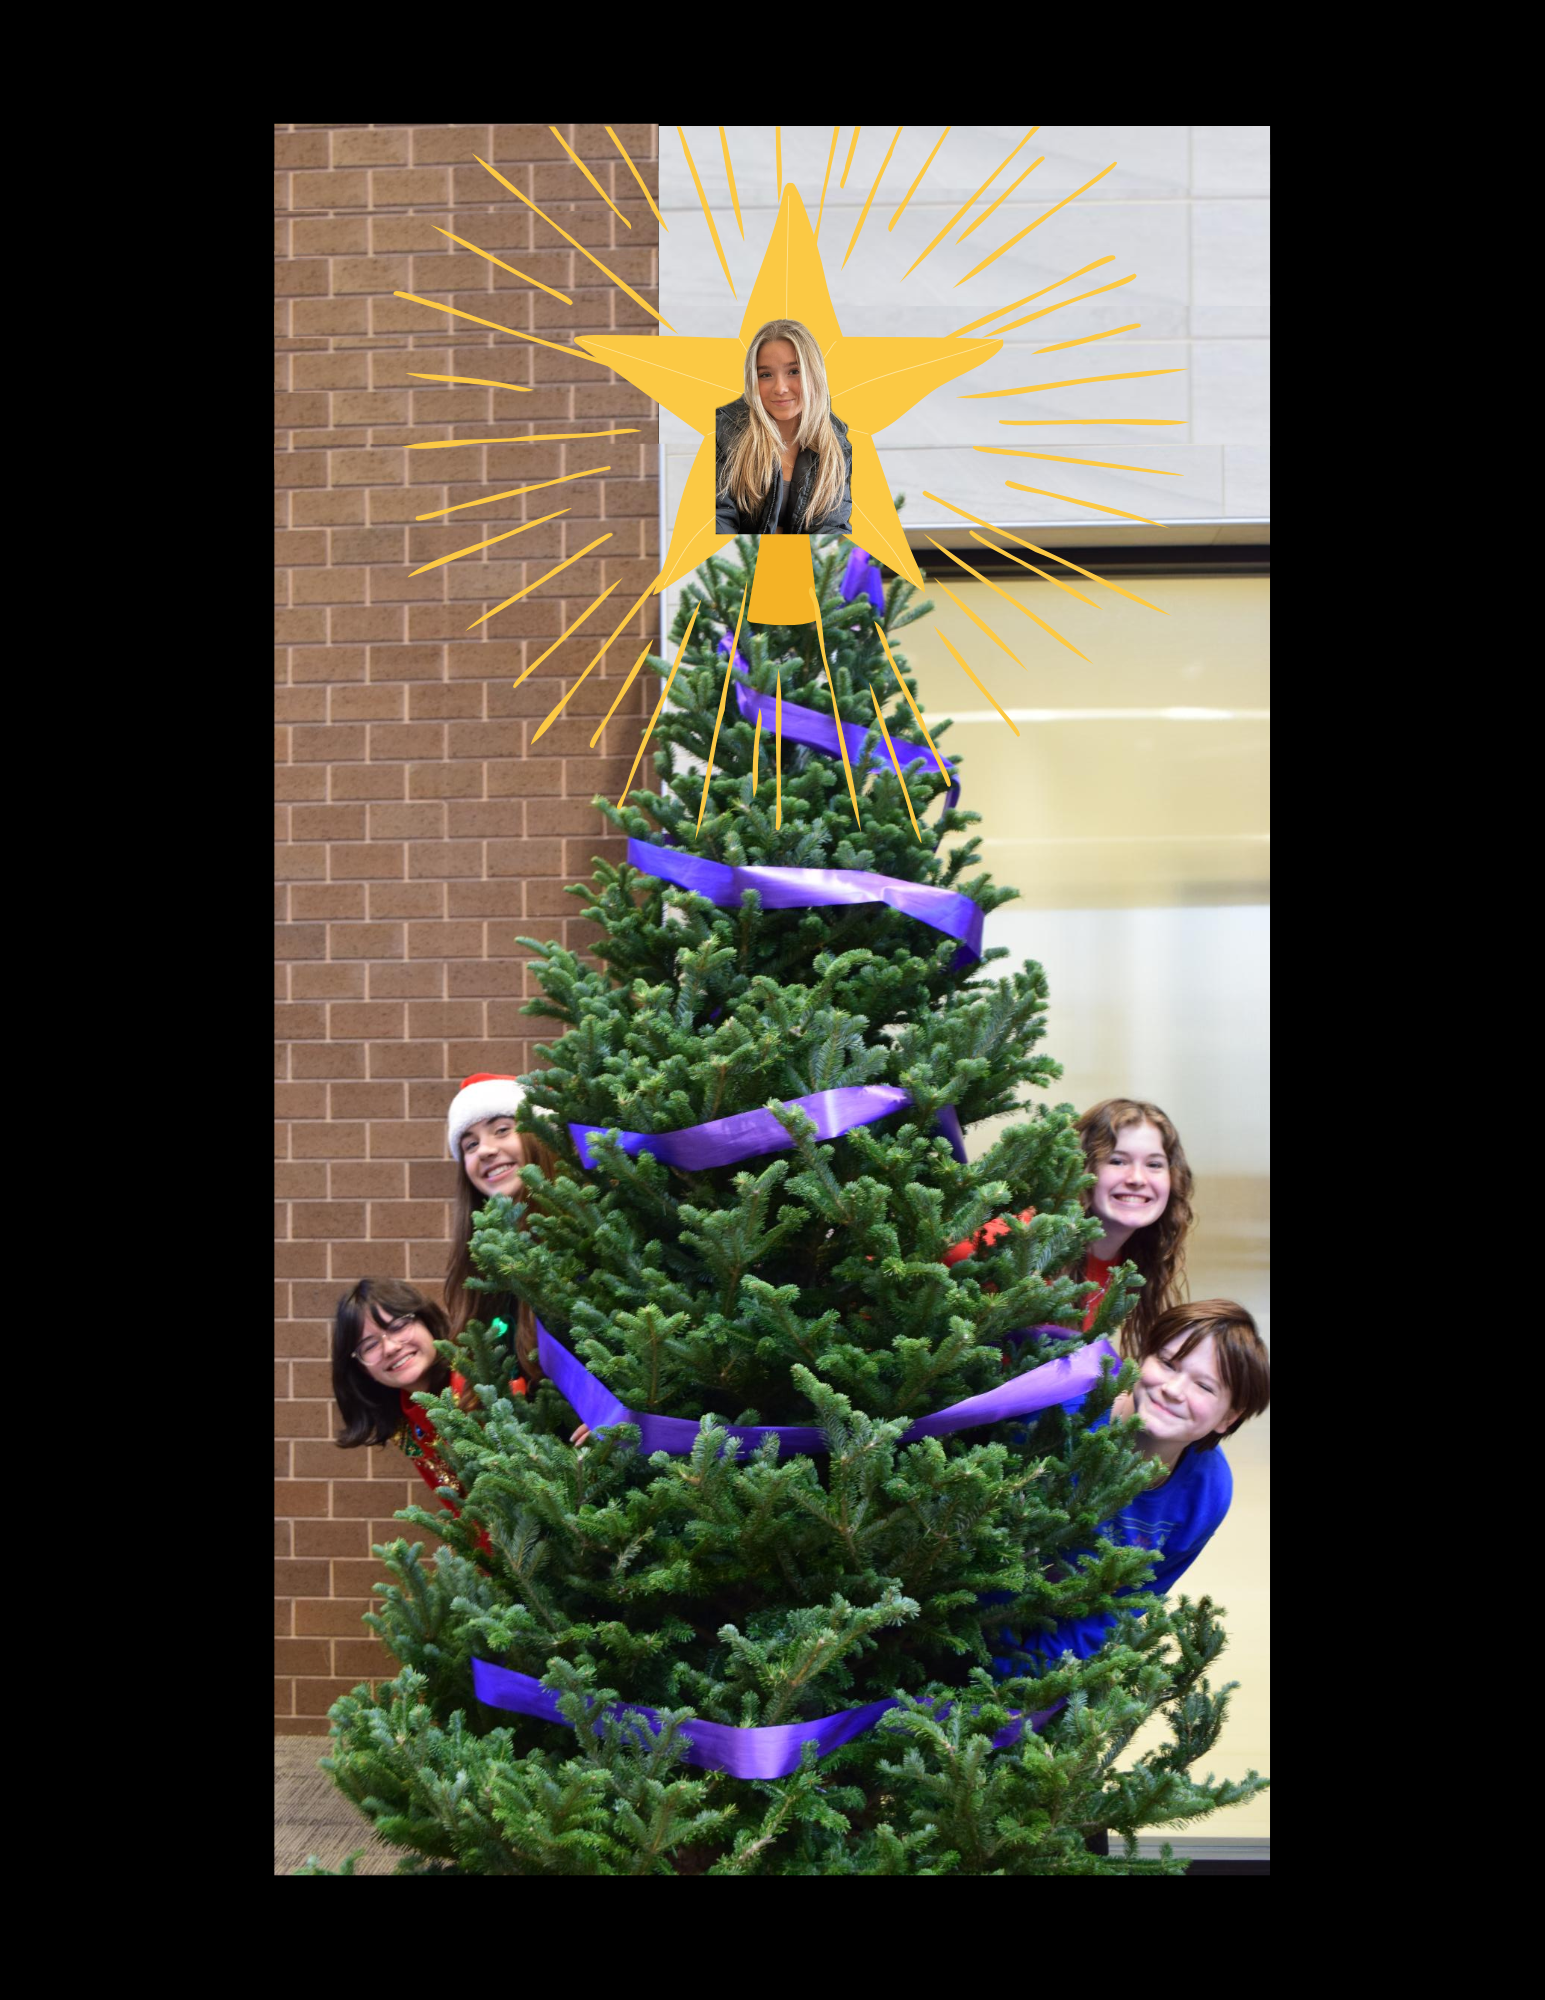 The Dowling Catholic Post staff is shining this Christmas season!